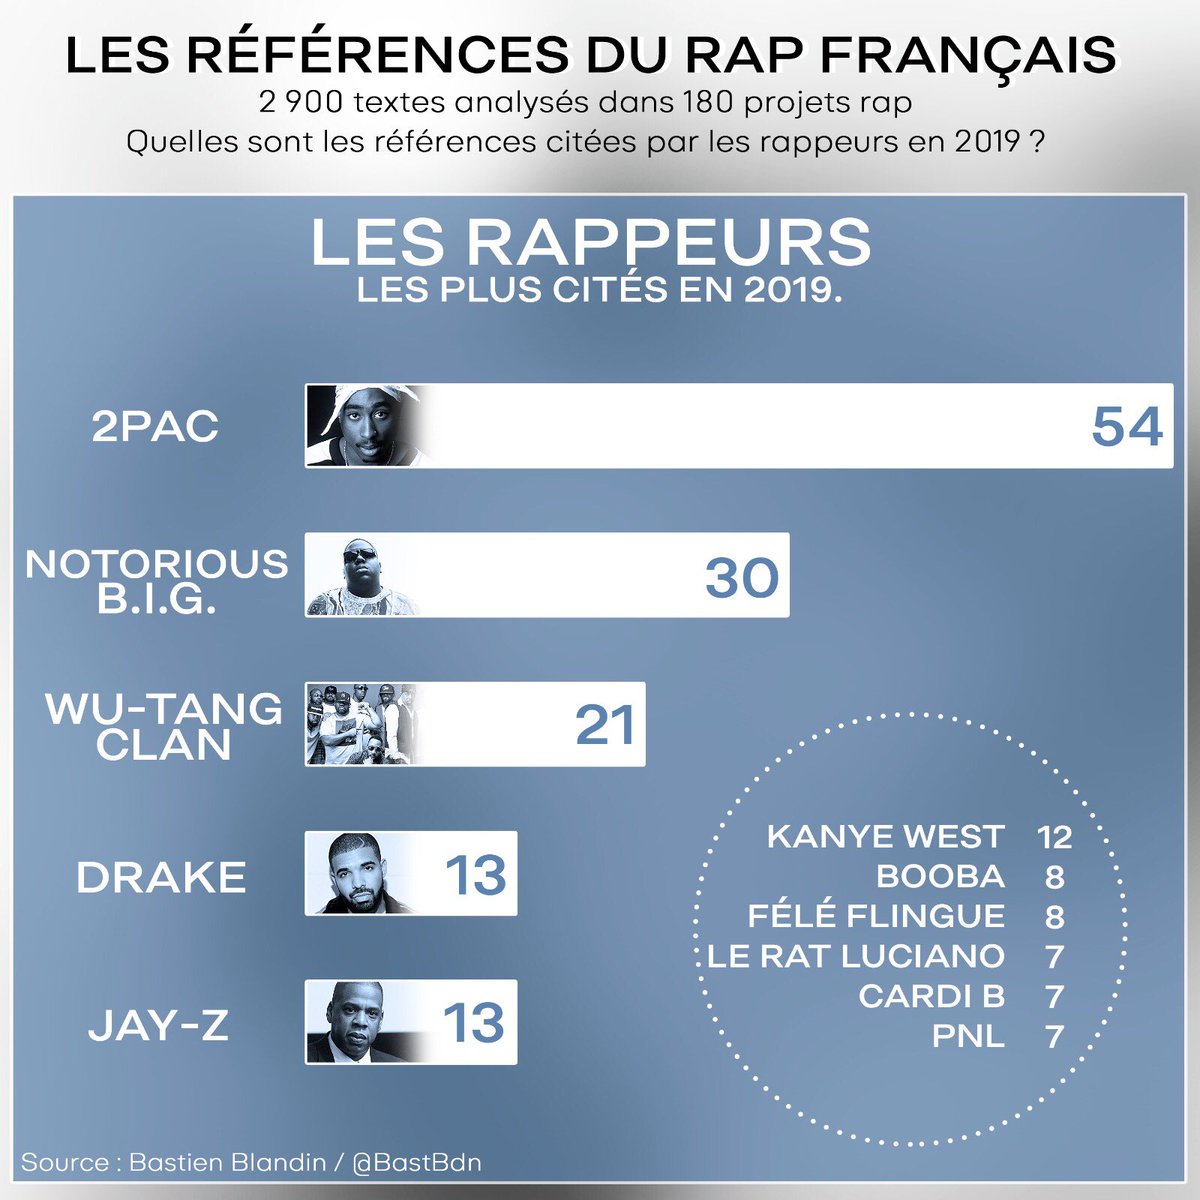 LES RAPPEURSLes rappeurs français, souvent grands auditeurs de rap, ne citent pas beaucoup les autres artistes du game français (Booba et PNL sont les rares rappeurs “actuels” cités par d’autres).Par contre, les artistes US sont bien là, comme le montre ce top 6 légendaire.